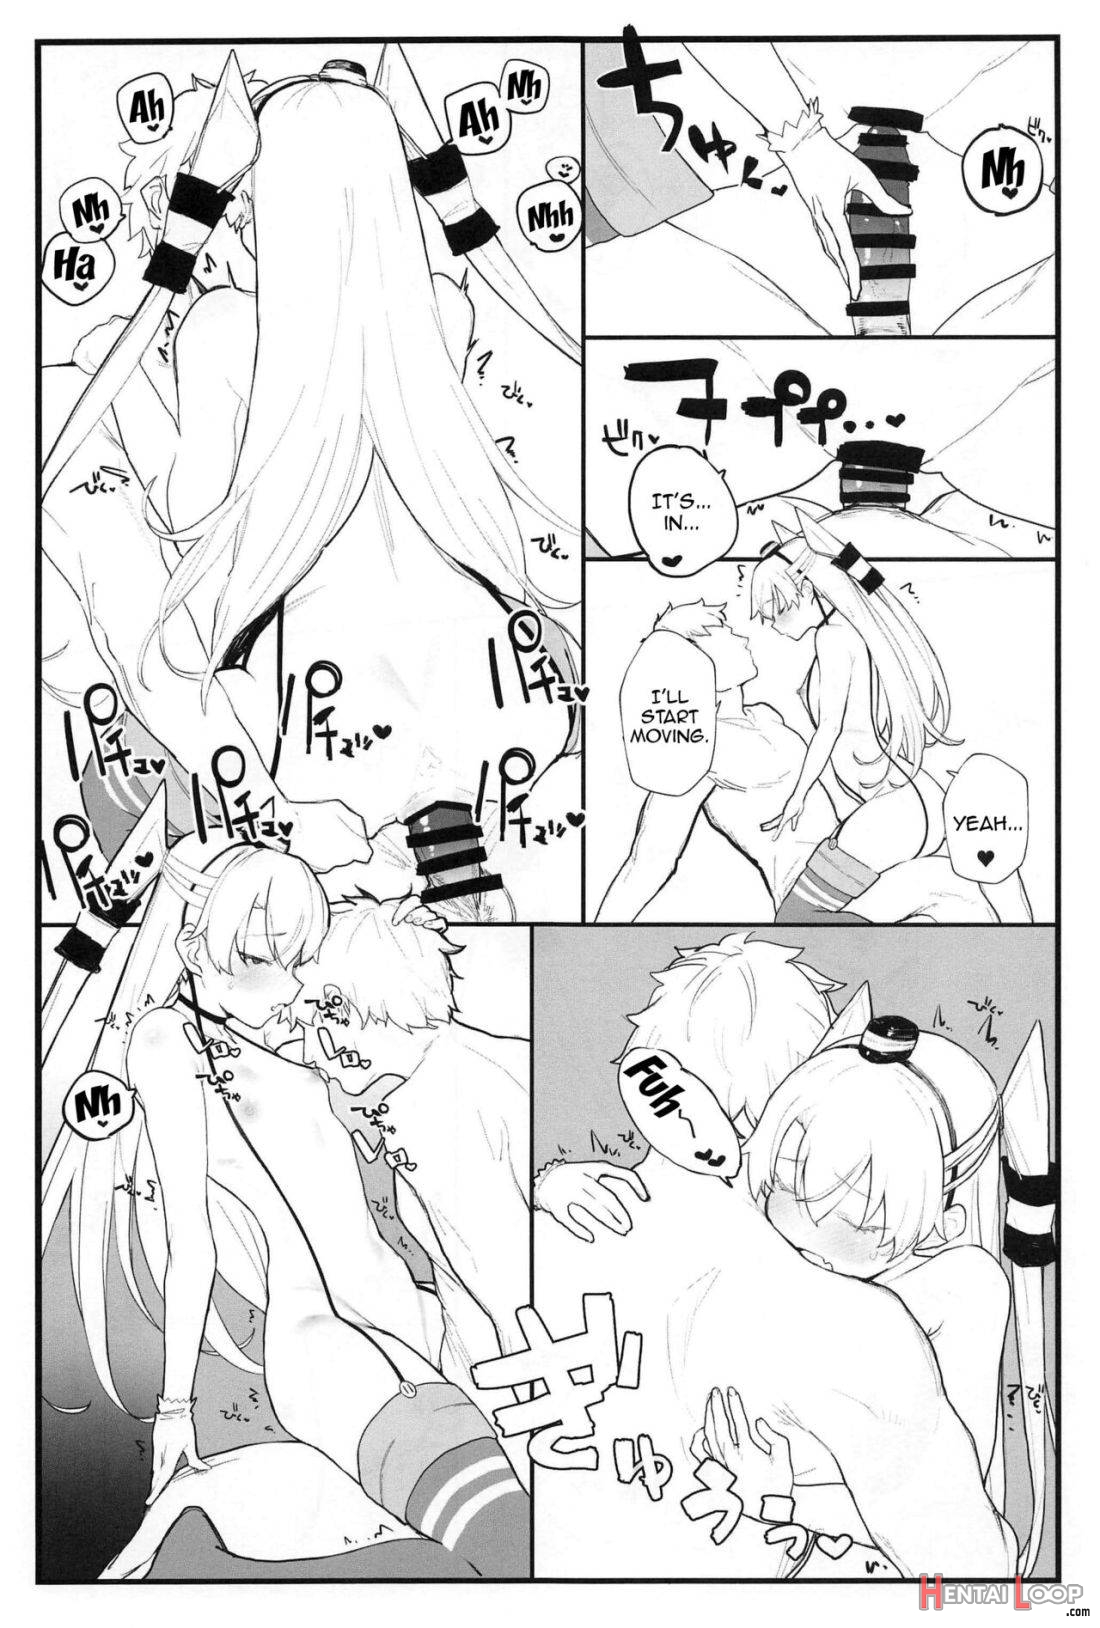 Ama Ama Amatsukaze page 14